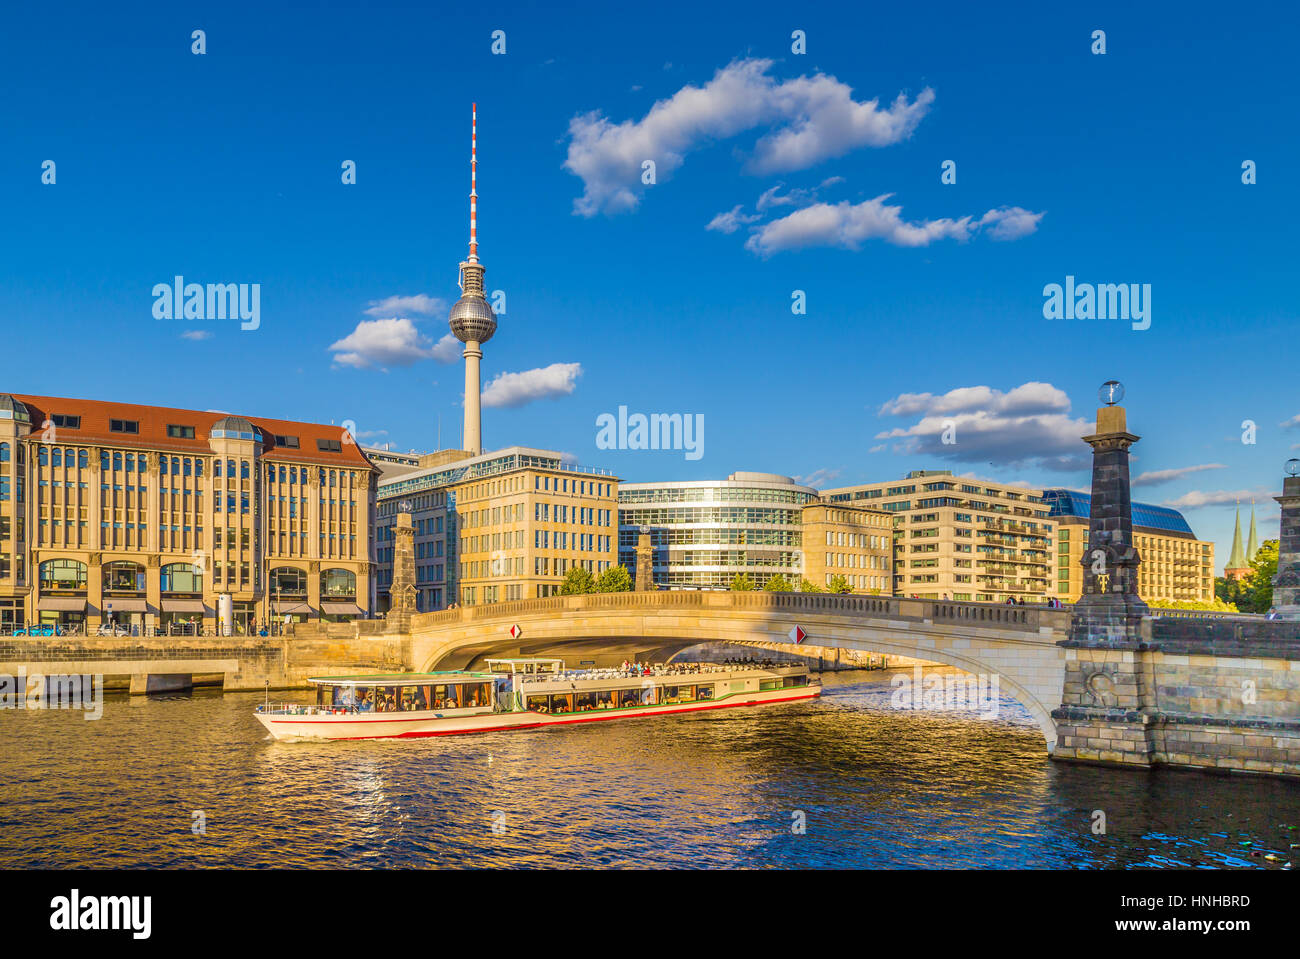 Célèbre tour de télévision de Berlin et des bâtiments historiques à l'île des Musées Friedrichsbruecke avec passage en bateau sur la rivière Spree au coucher du soleil, Berlin, Allemagne Banque D'Images